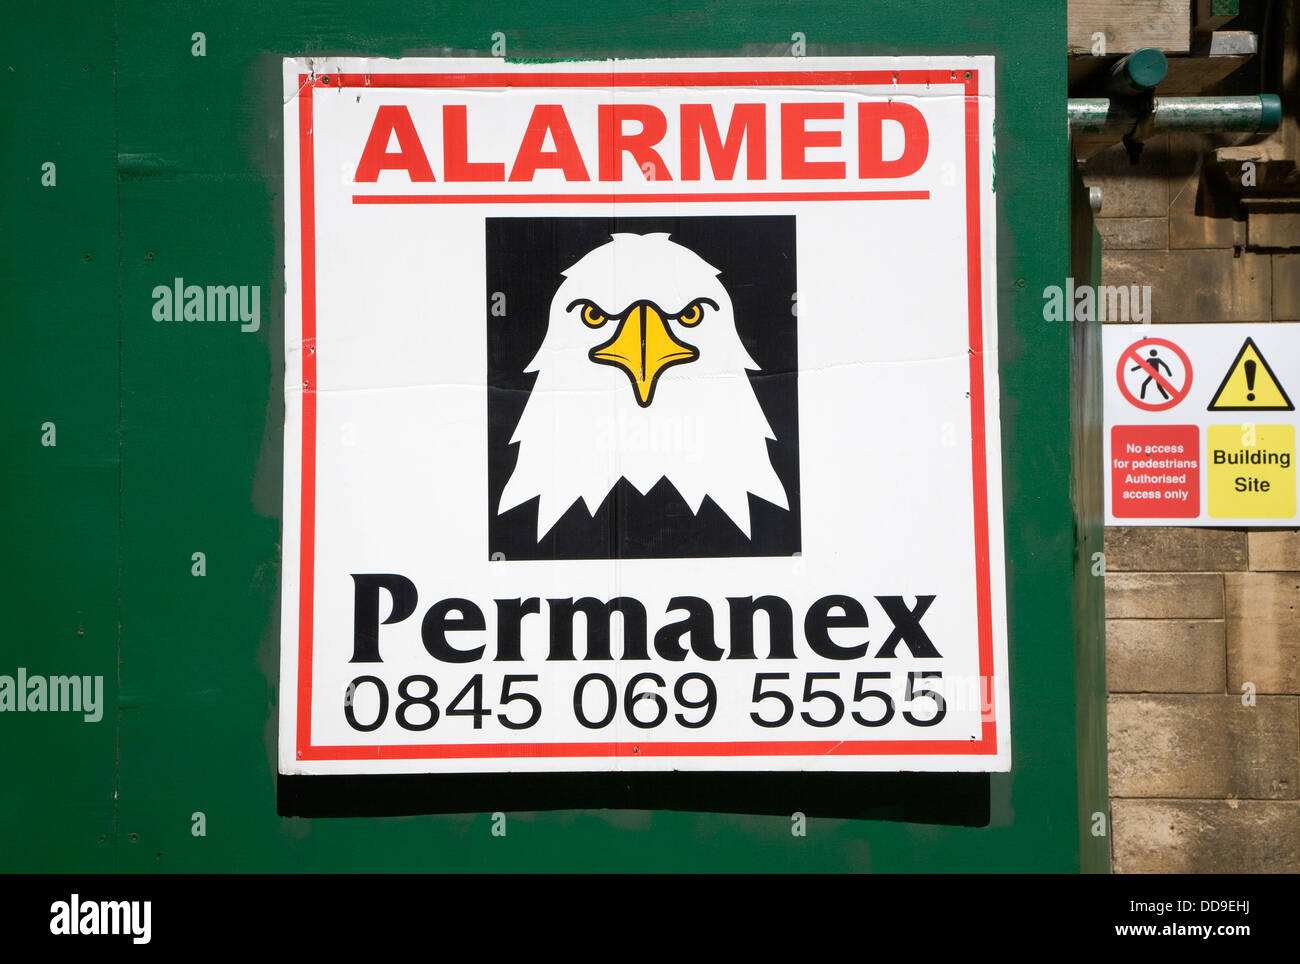 Alarmé de sécurité sign building site eagle Permanex Banque D'Images